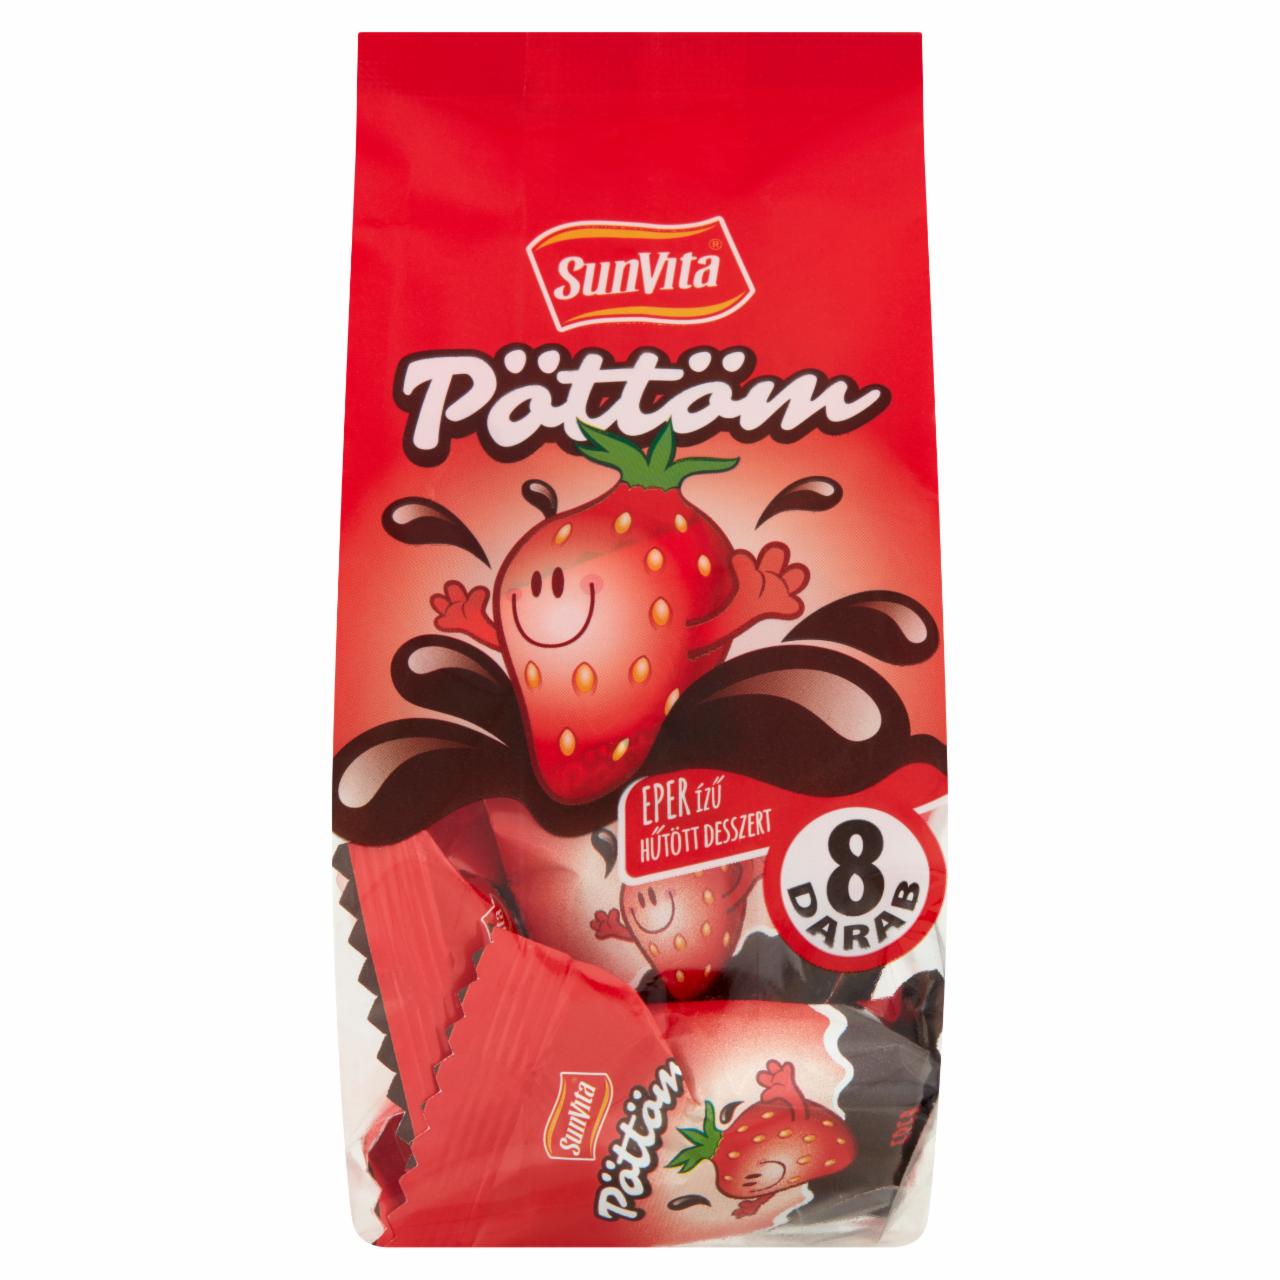 Képek - SunVita Pöttöm eper ízű hűtött desszert 8 x 15 g (120 g)